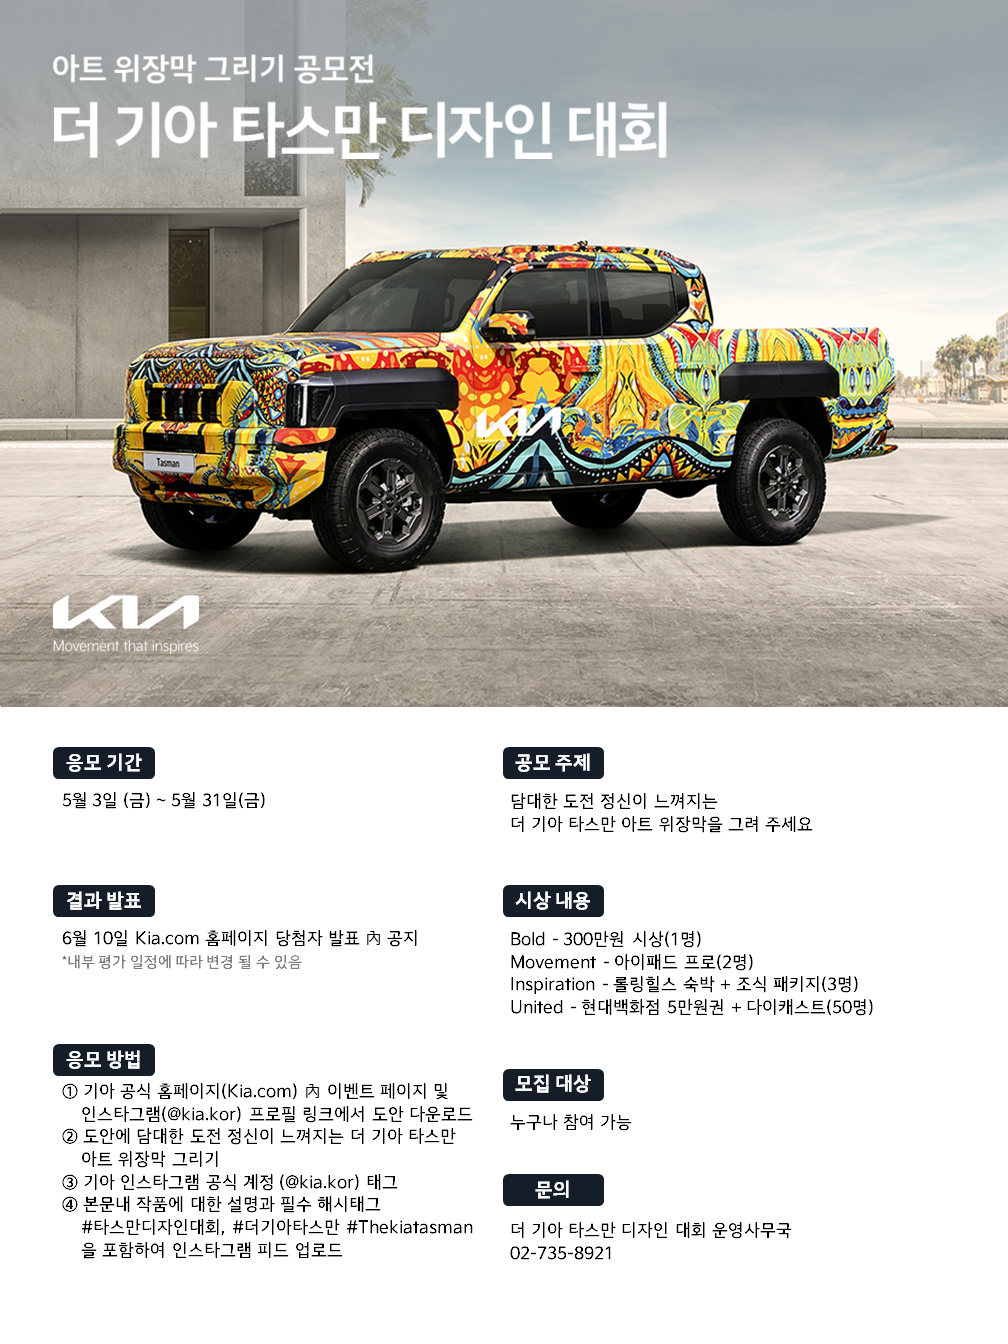 기아, '더 기아 타스만' 위장막 디자인 대회 개최